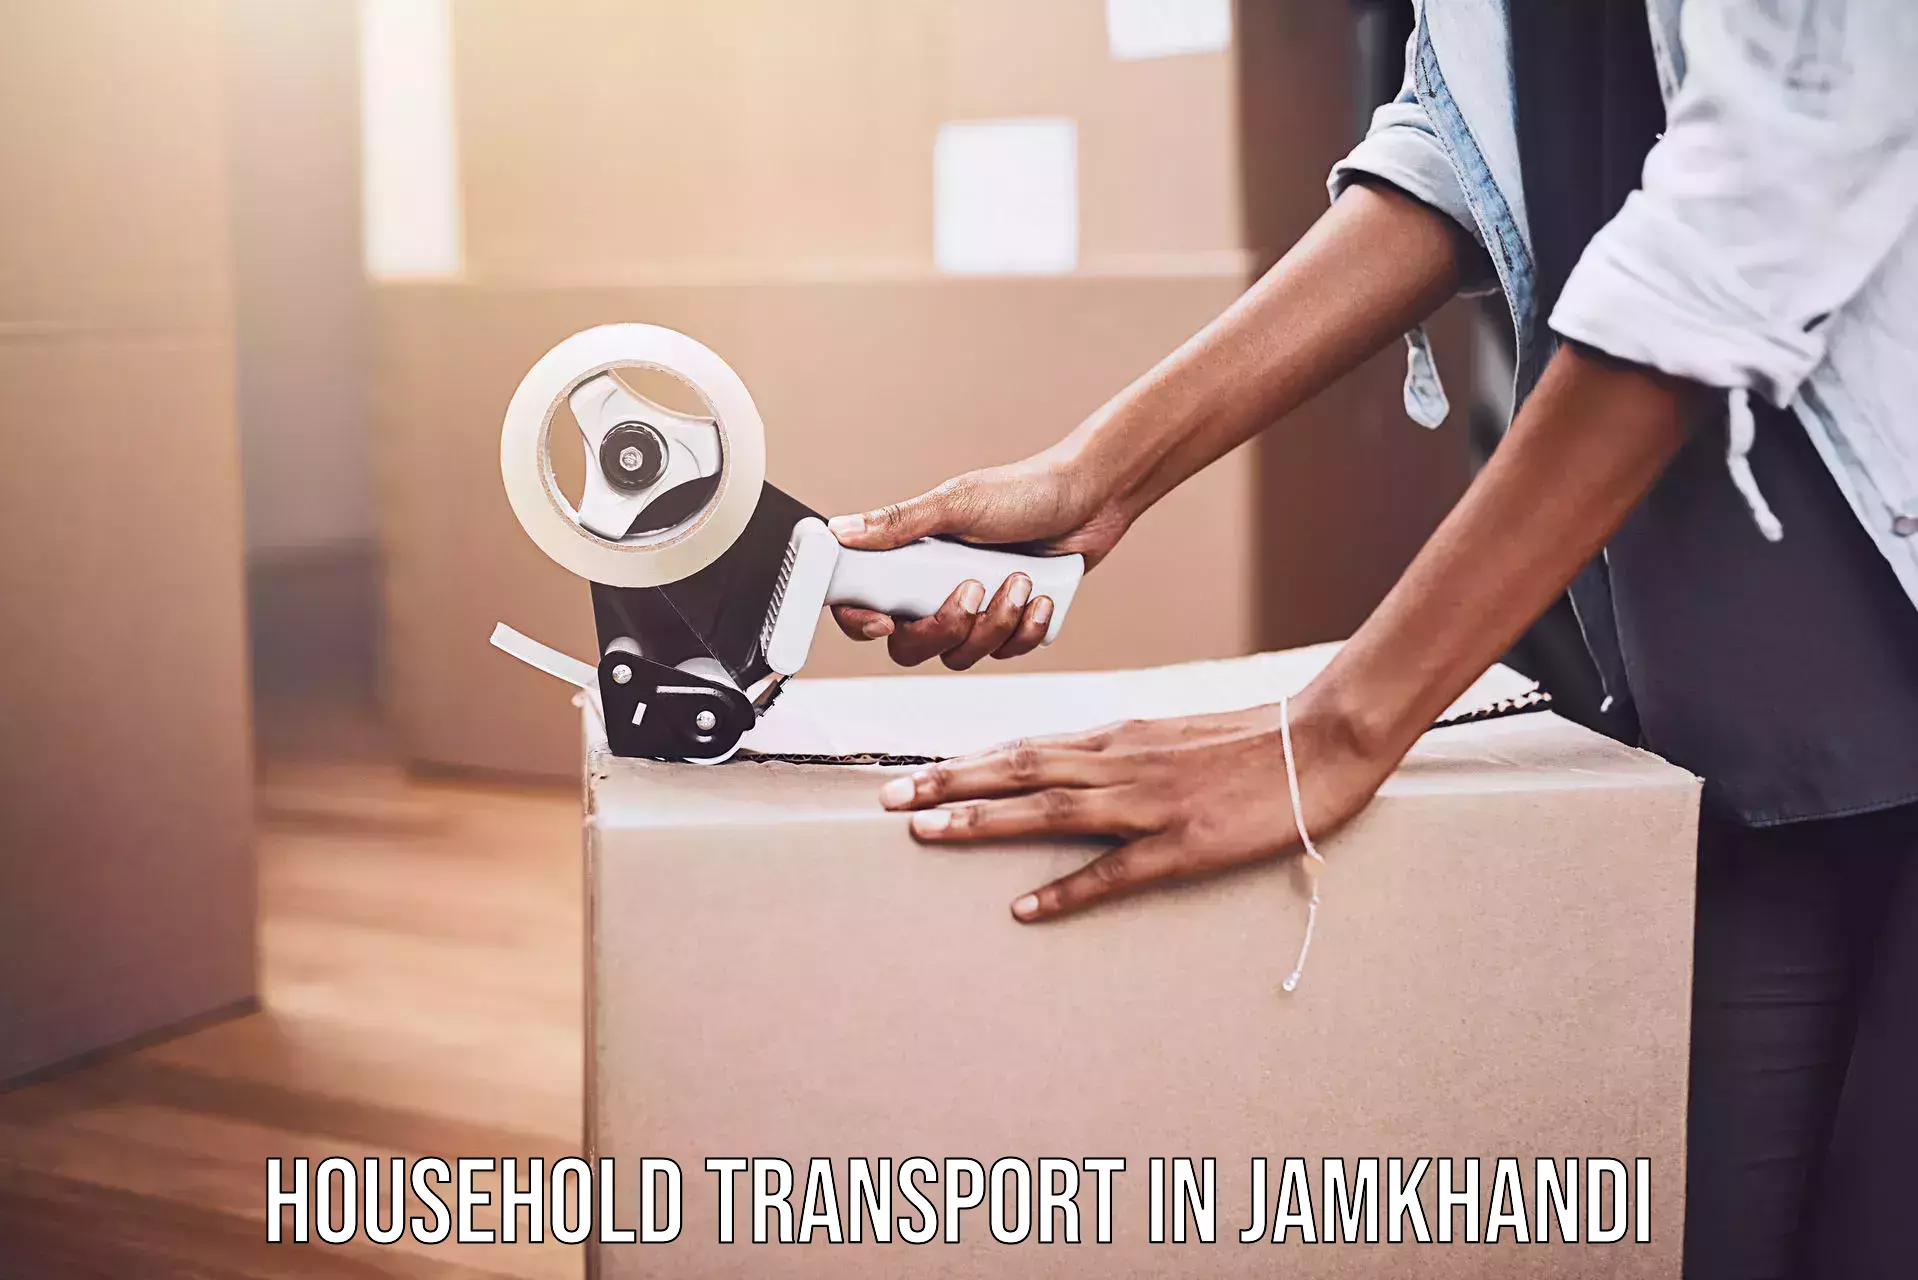 Furniture moving experts in Jamkhandi